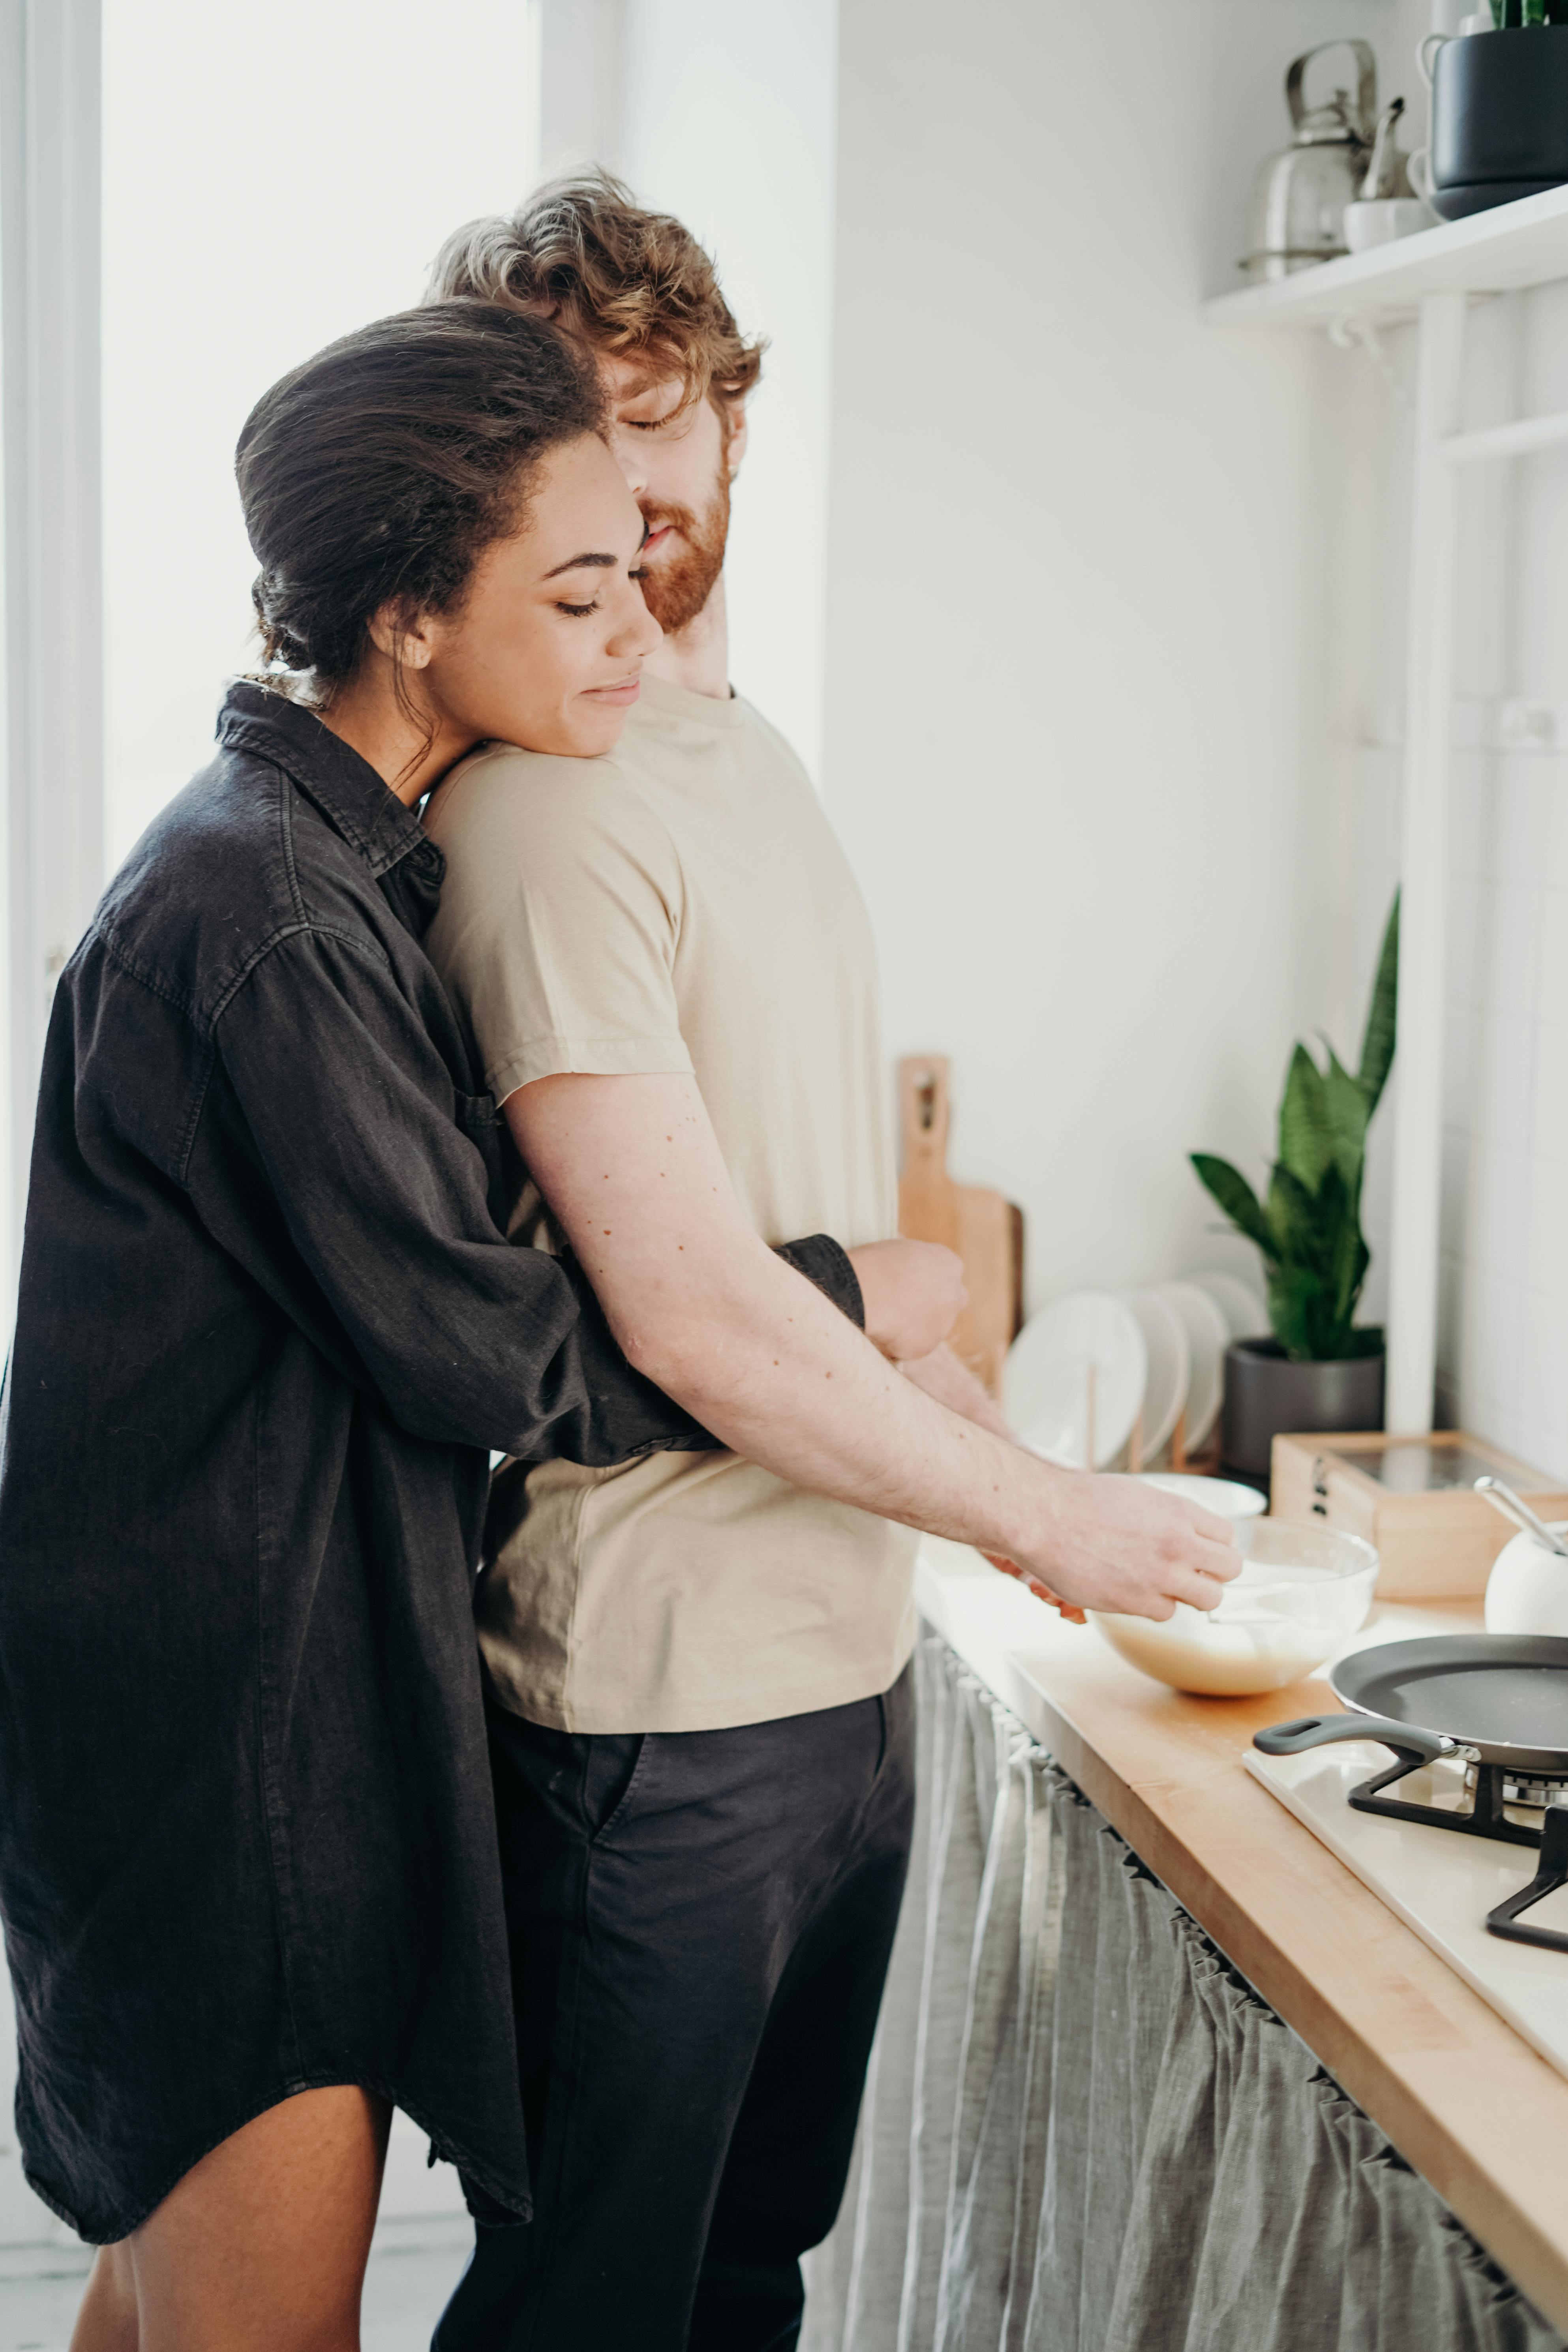 Ein Paar, das sich umarmt, während der Mann eine Mahlzeit zubereitet | Quelle: Pexels